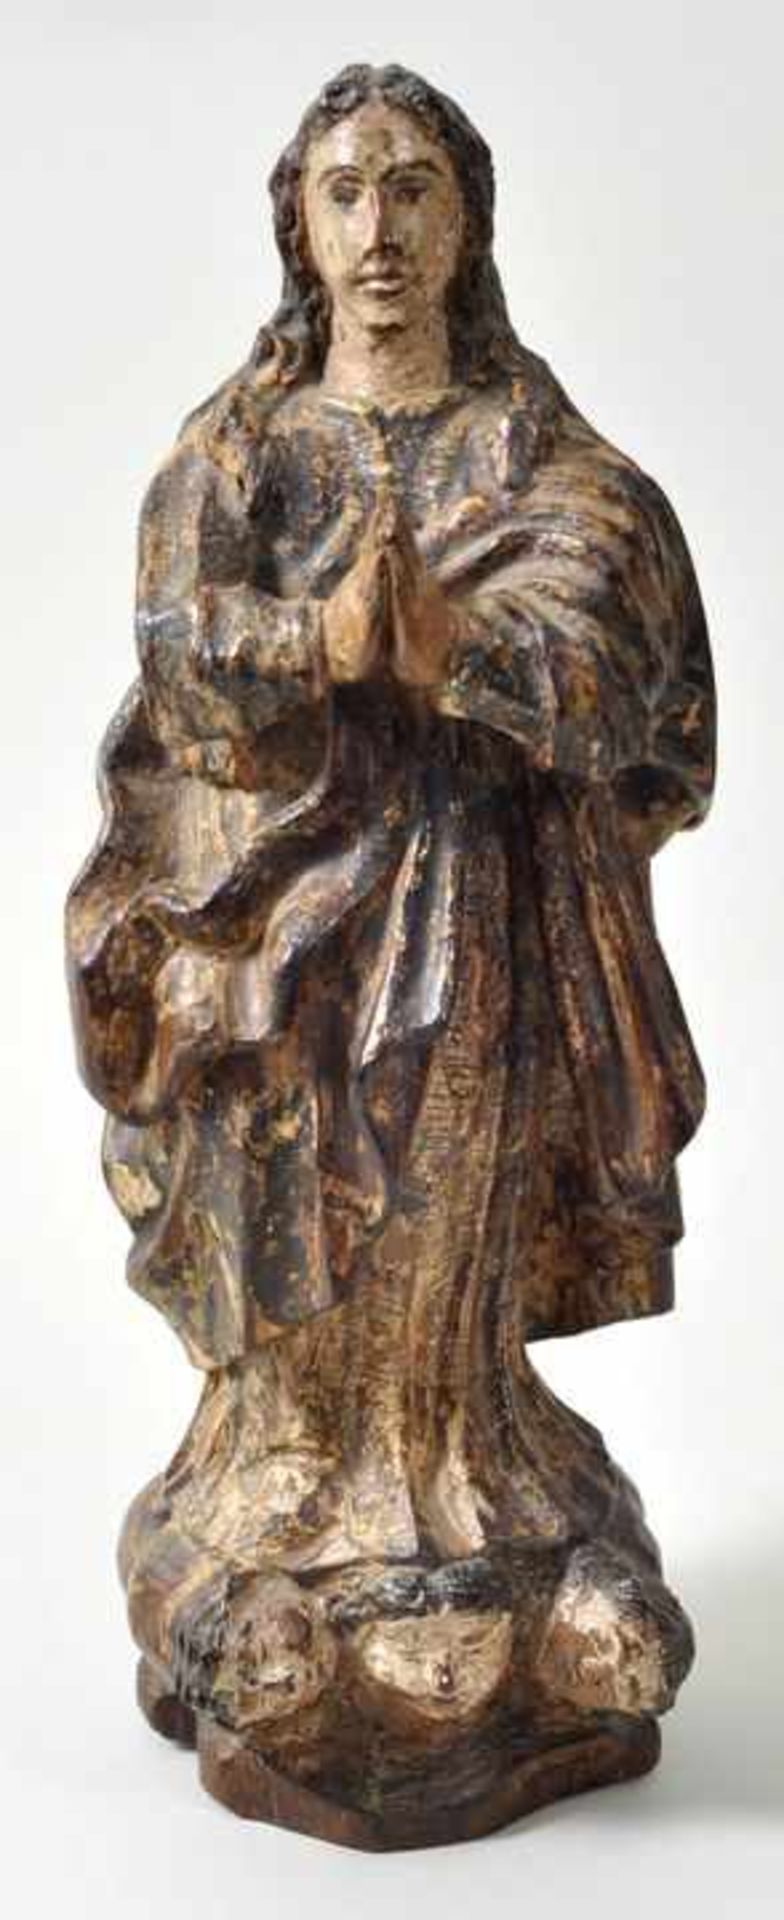 Maria Immaculata, Spanien, um 1700Wurzelholz, geschnitzt, Farbfassung. In streng aufgefasster,